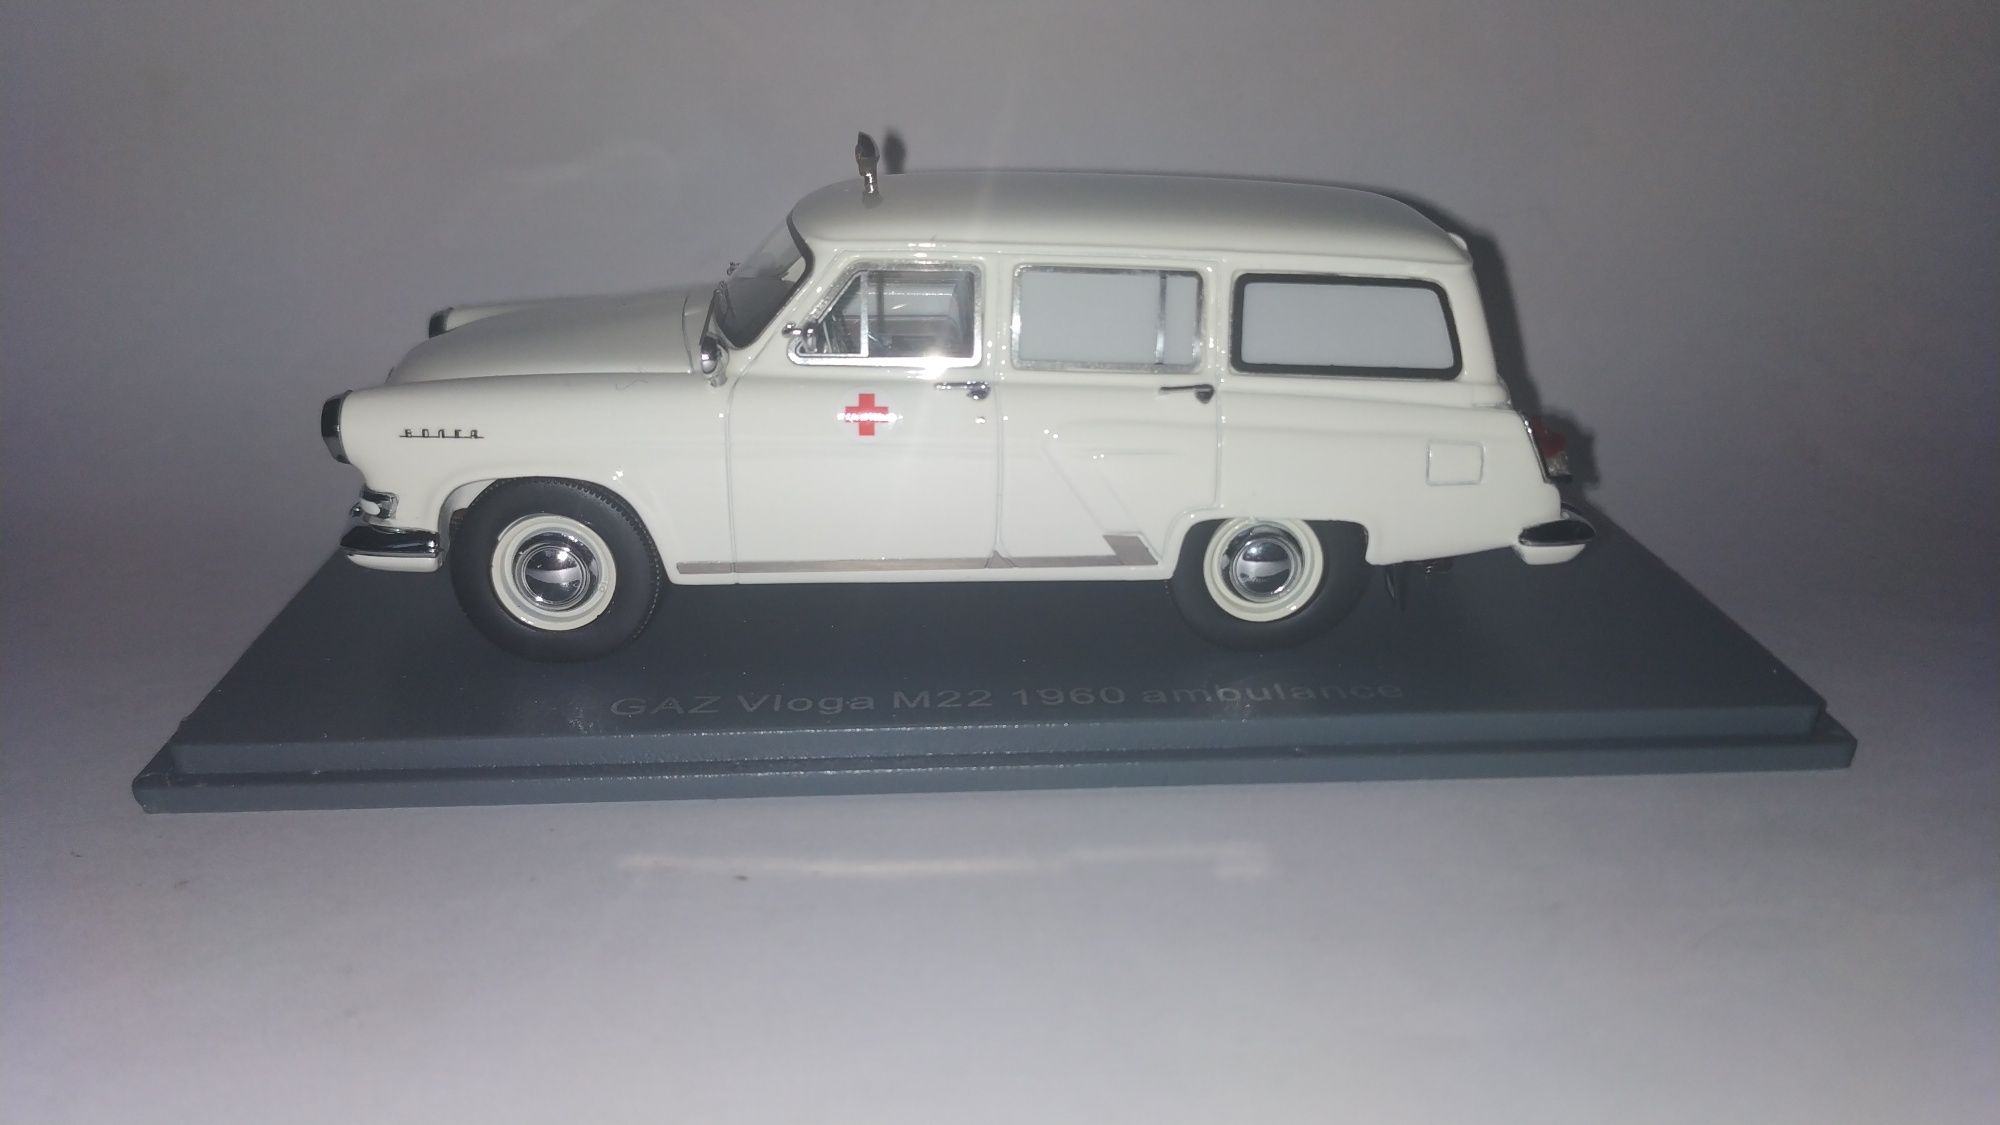 NEO GAZ Volga M22 1960. Ambulance.